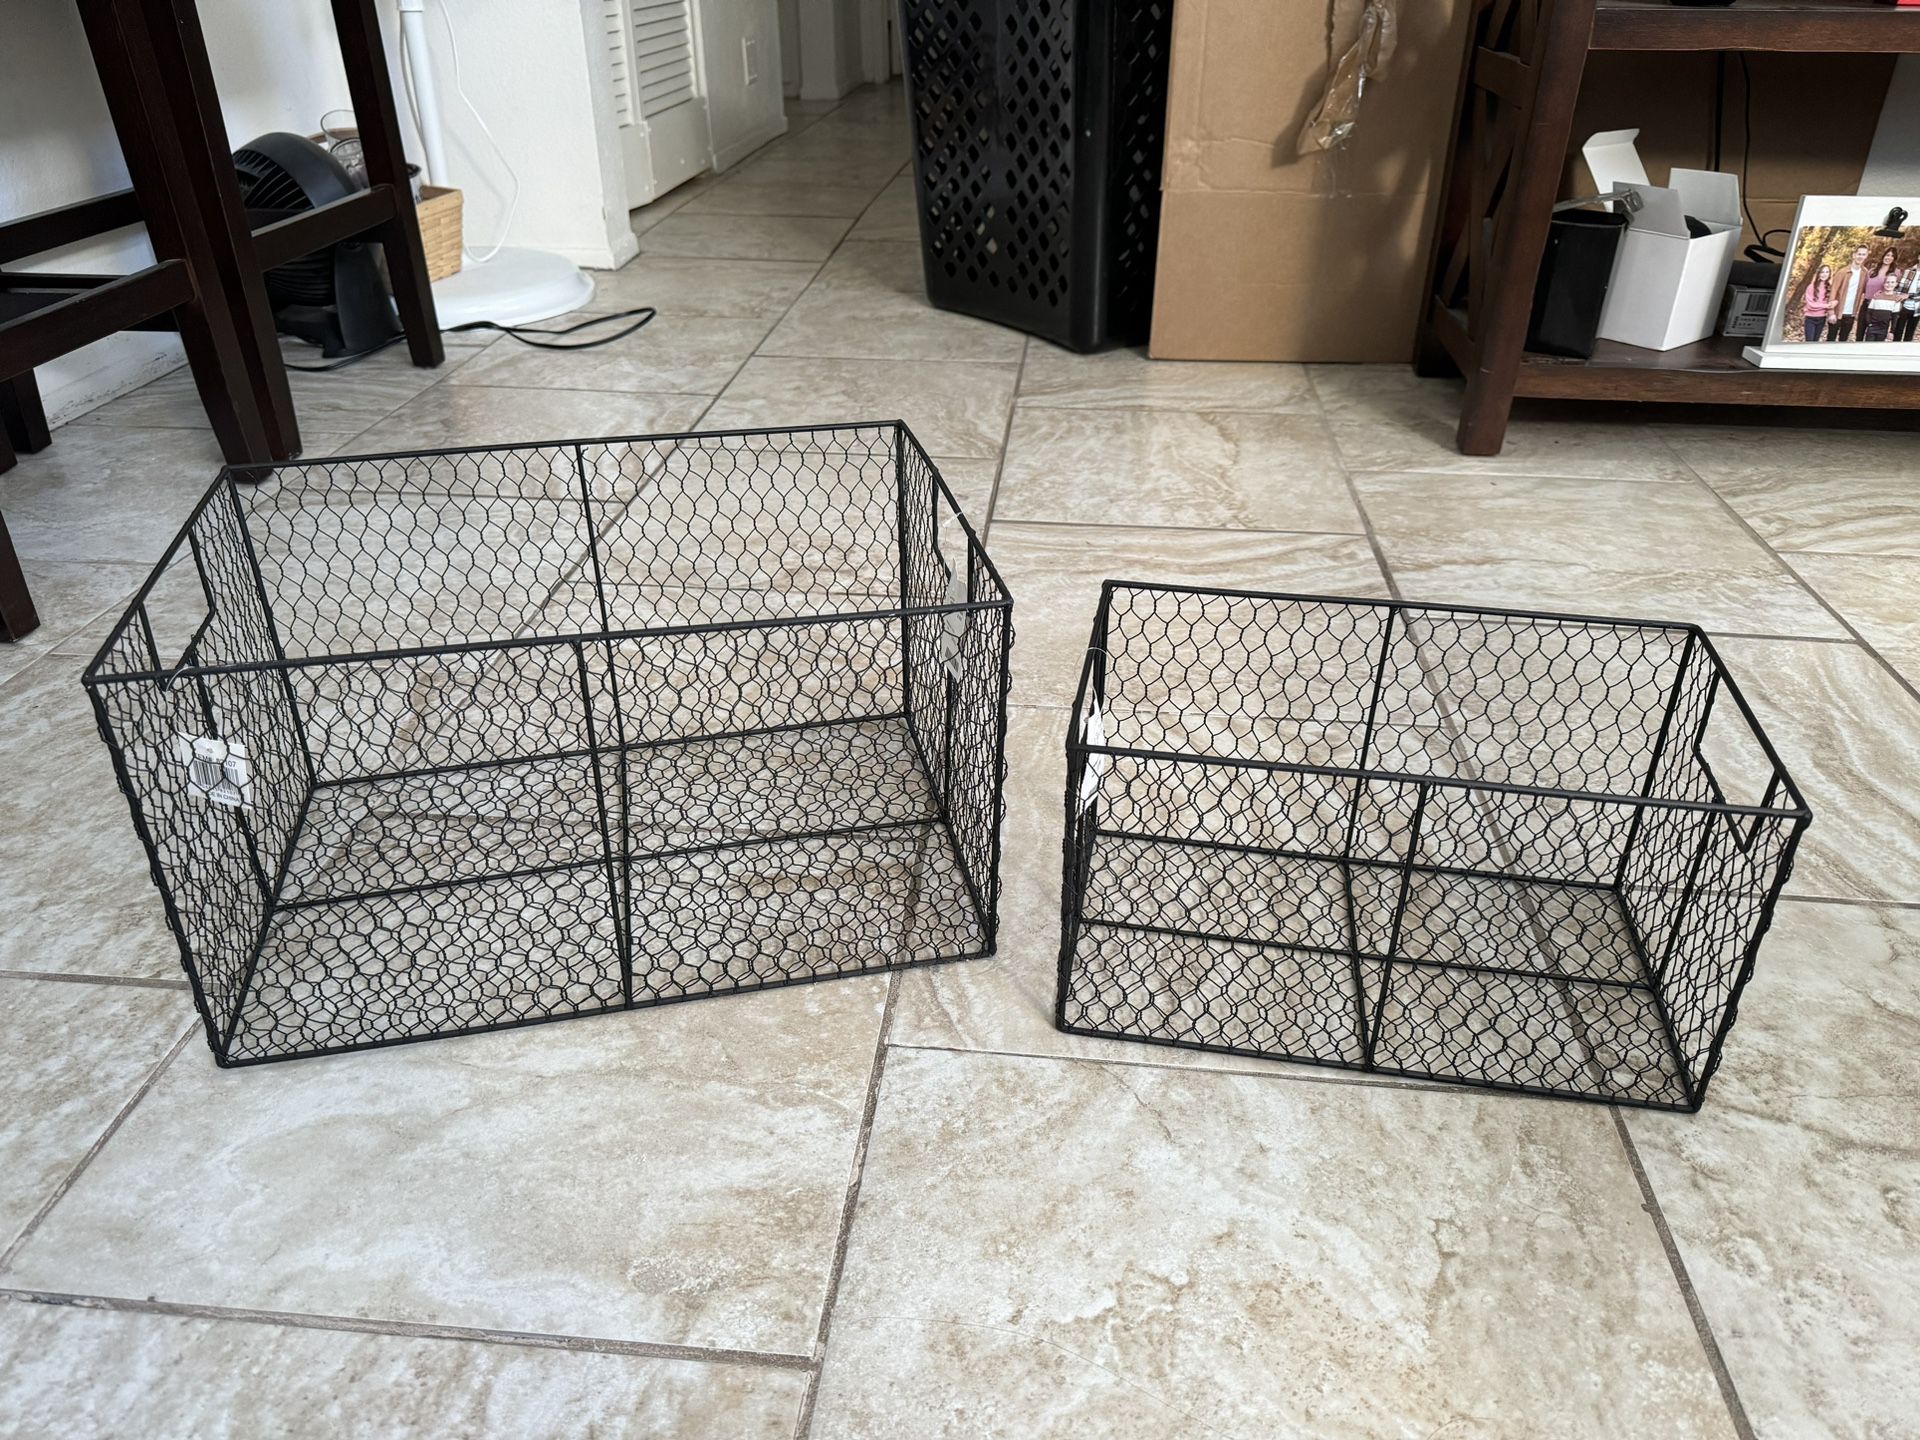 Wire Storage Baskets